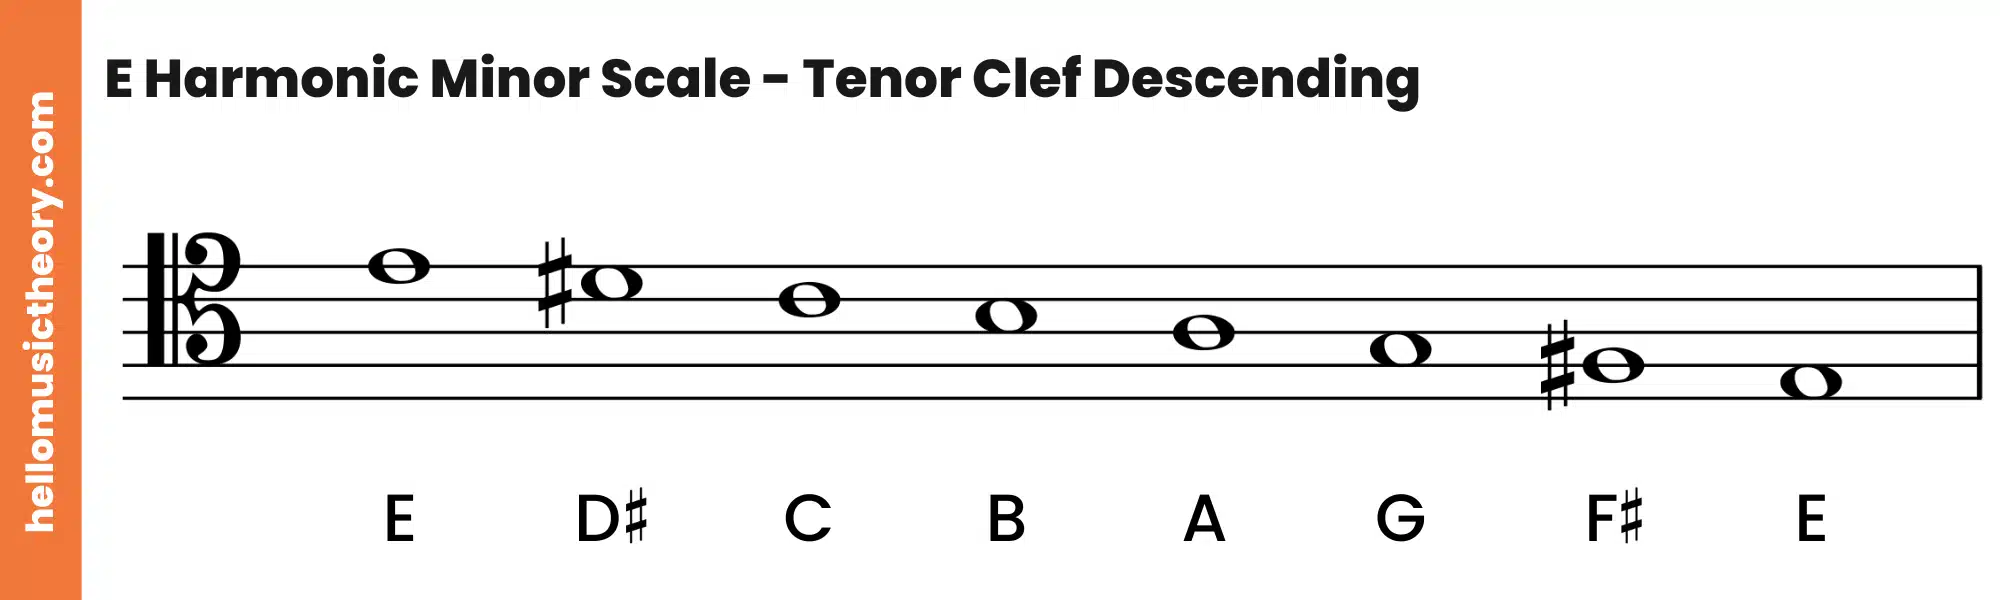 E Harmonic Minor Scale Tenor Clef Descending